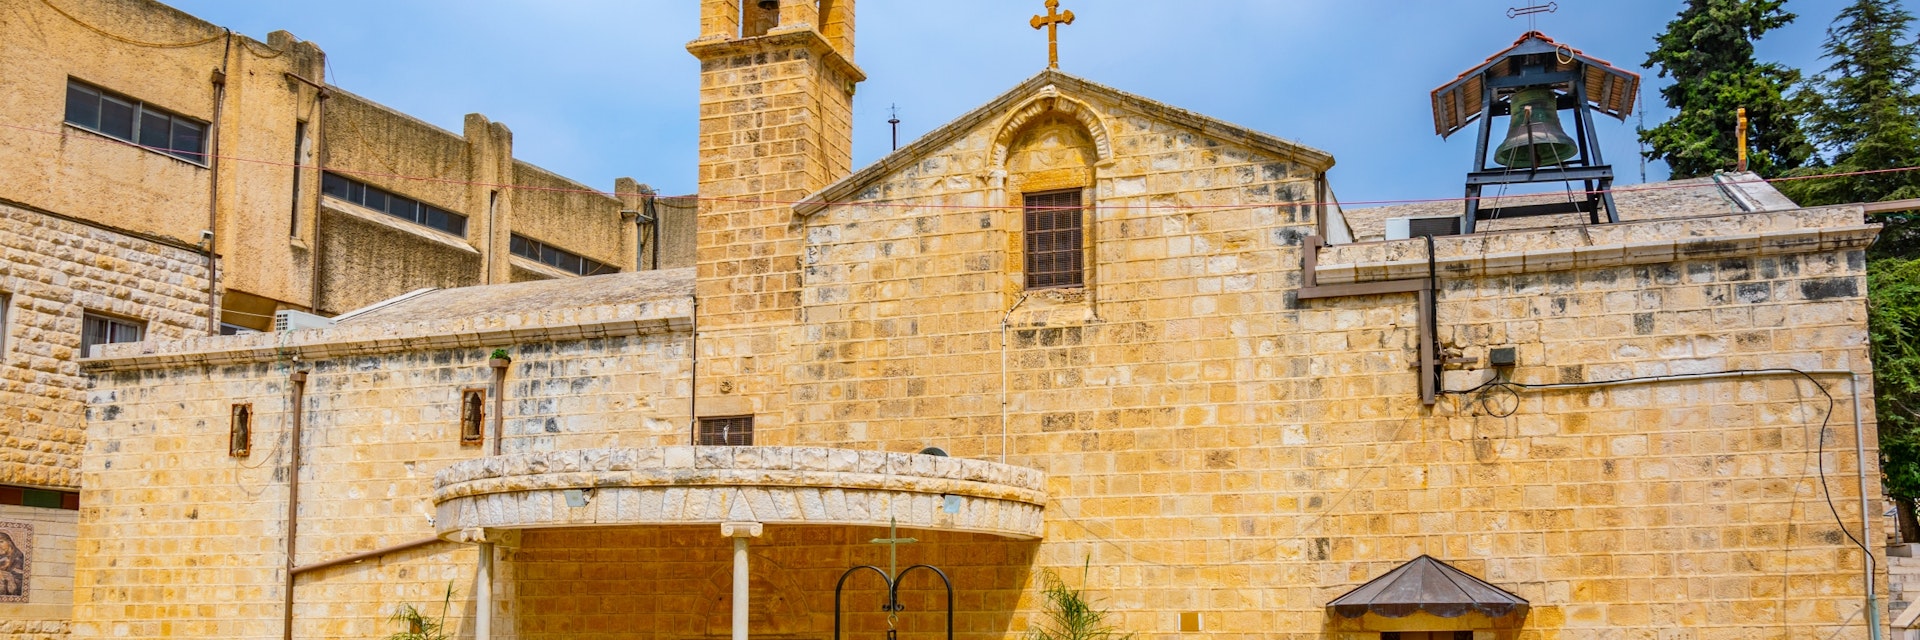 Greek orthodox church of the annunciation in Nazareth, Israel.